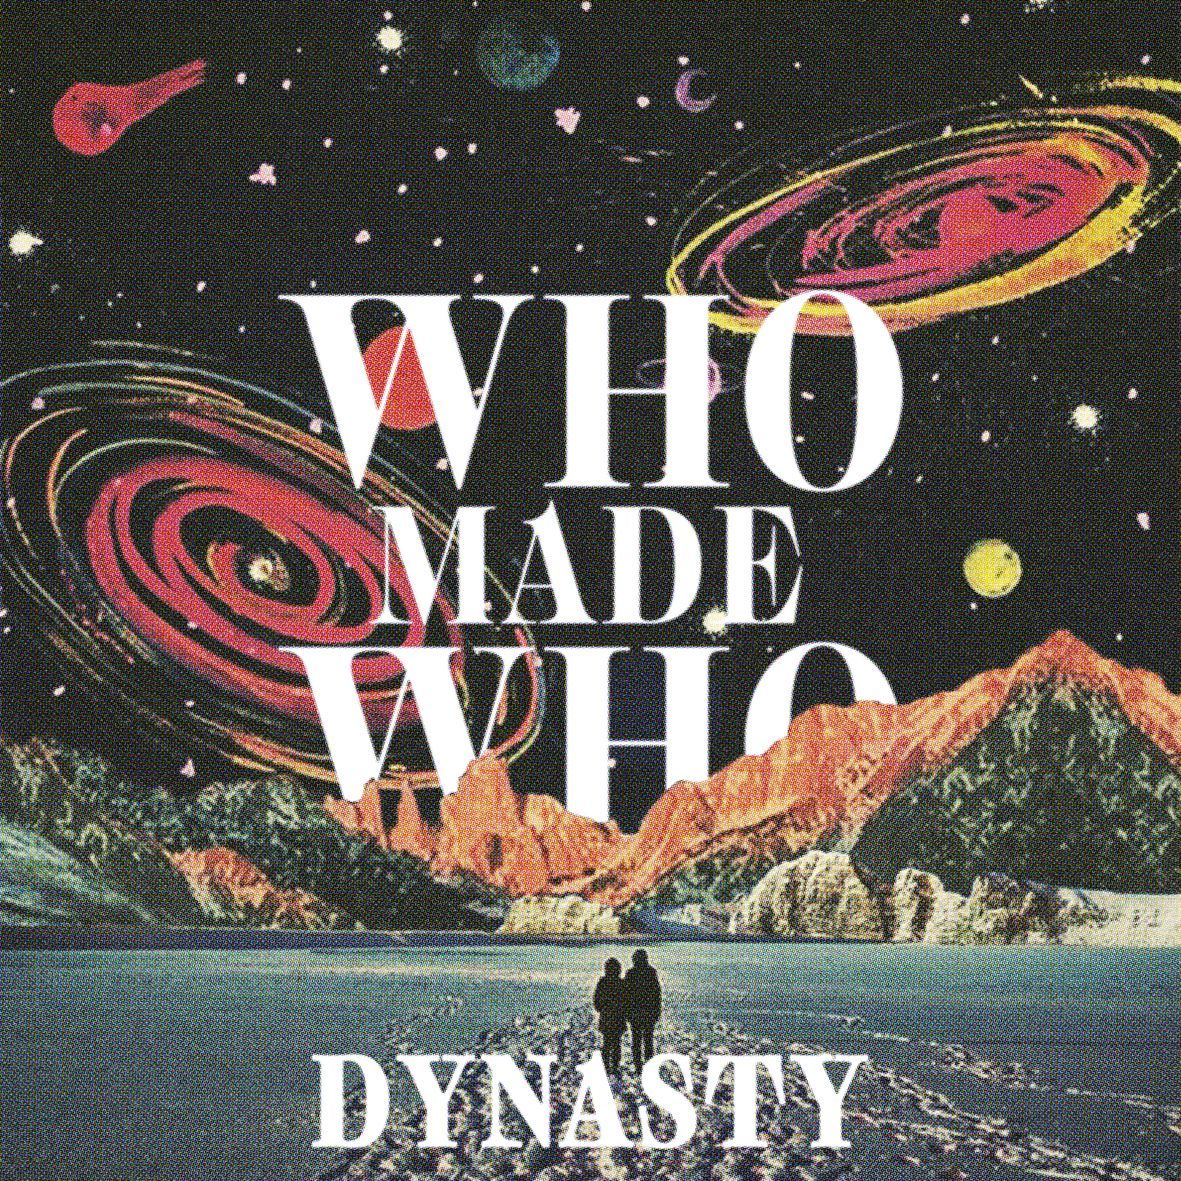 wmw_dynasty_cover.jpg